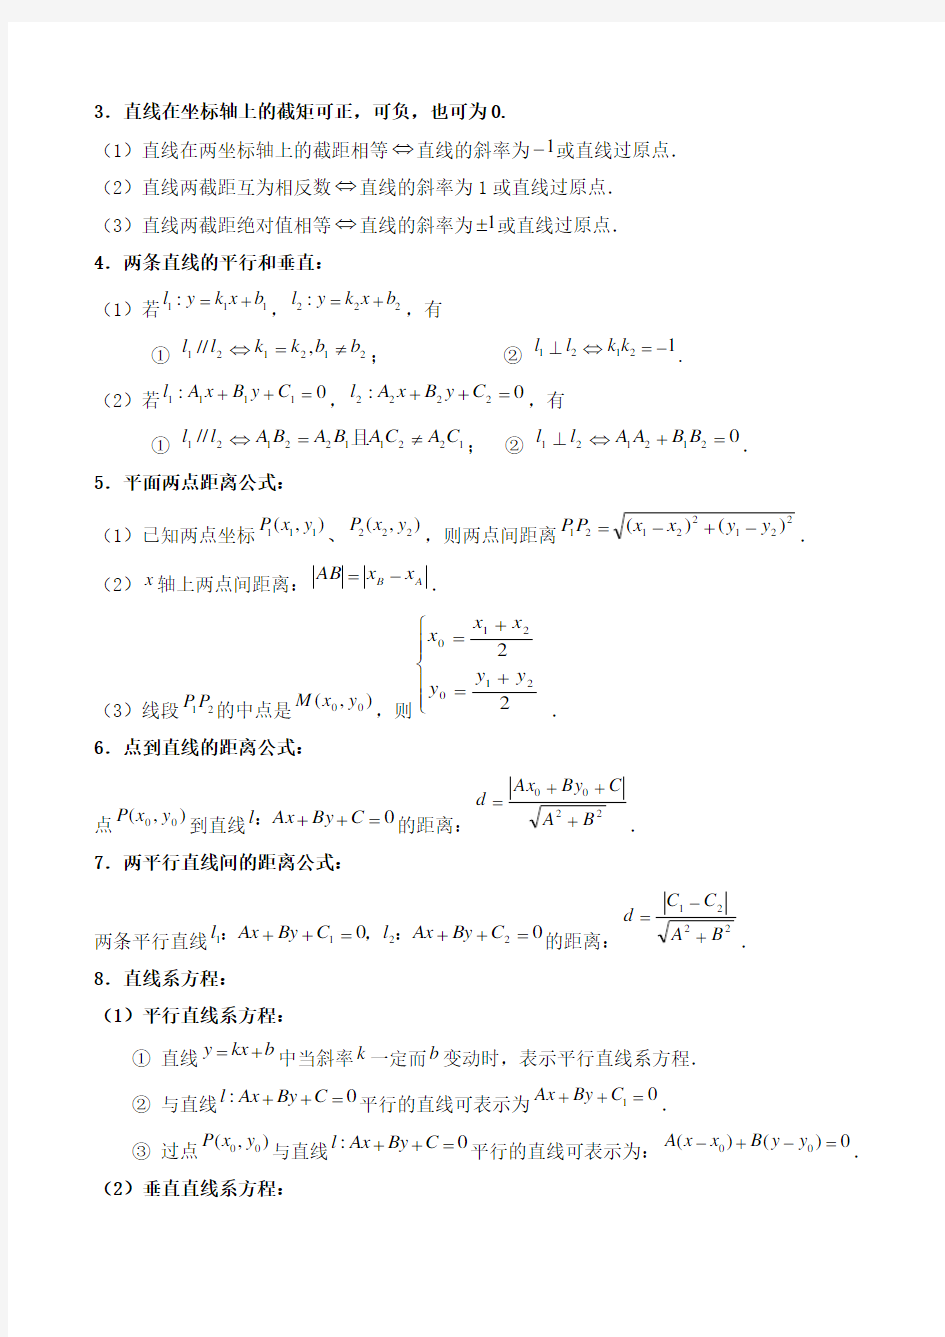 高中平面解析几何知识点总结 (1)